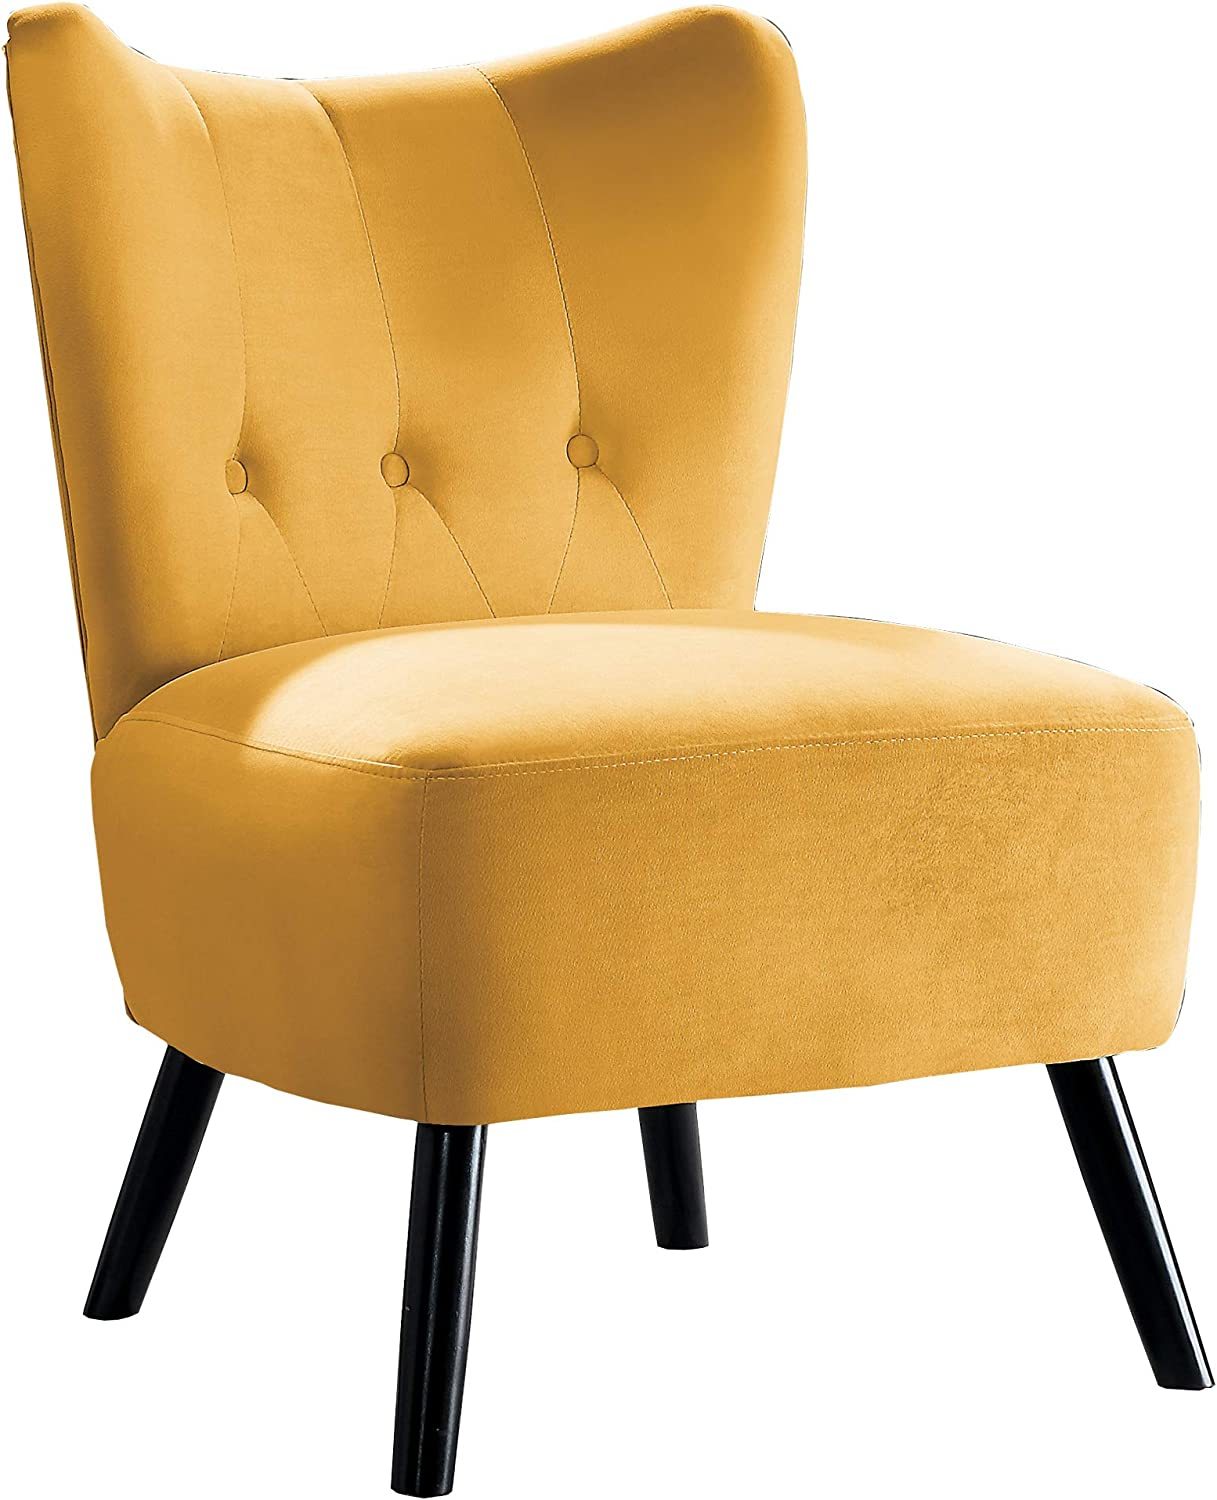 Homelegance Imani Velvet Accent Chair, Yellow - $215.99